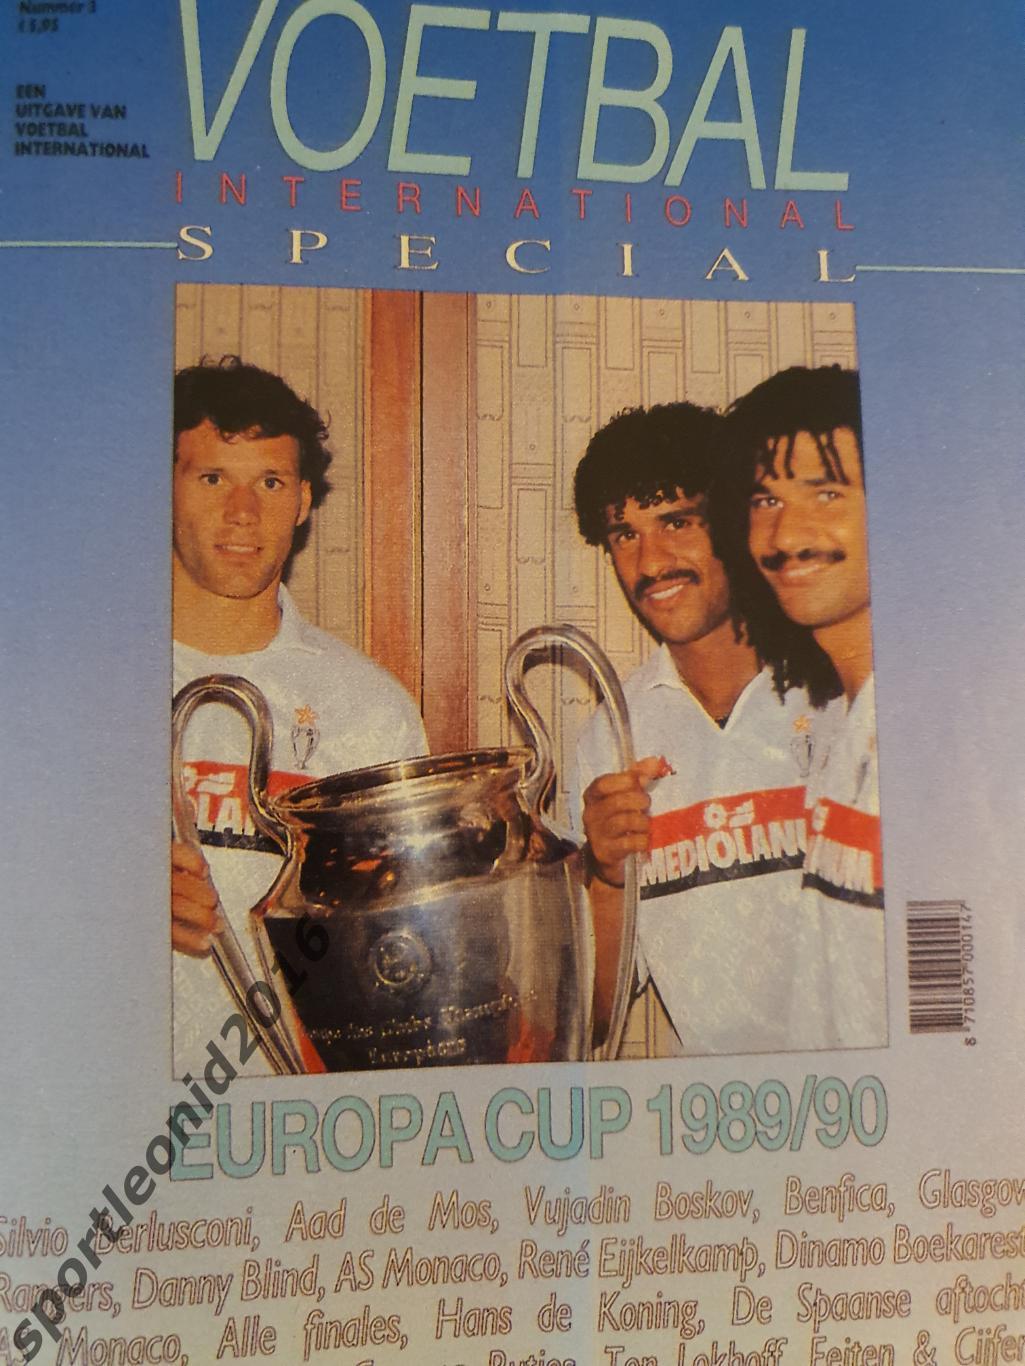 Voetbal International 1990 и 1989 годов выпуска.12 журналов.3 7